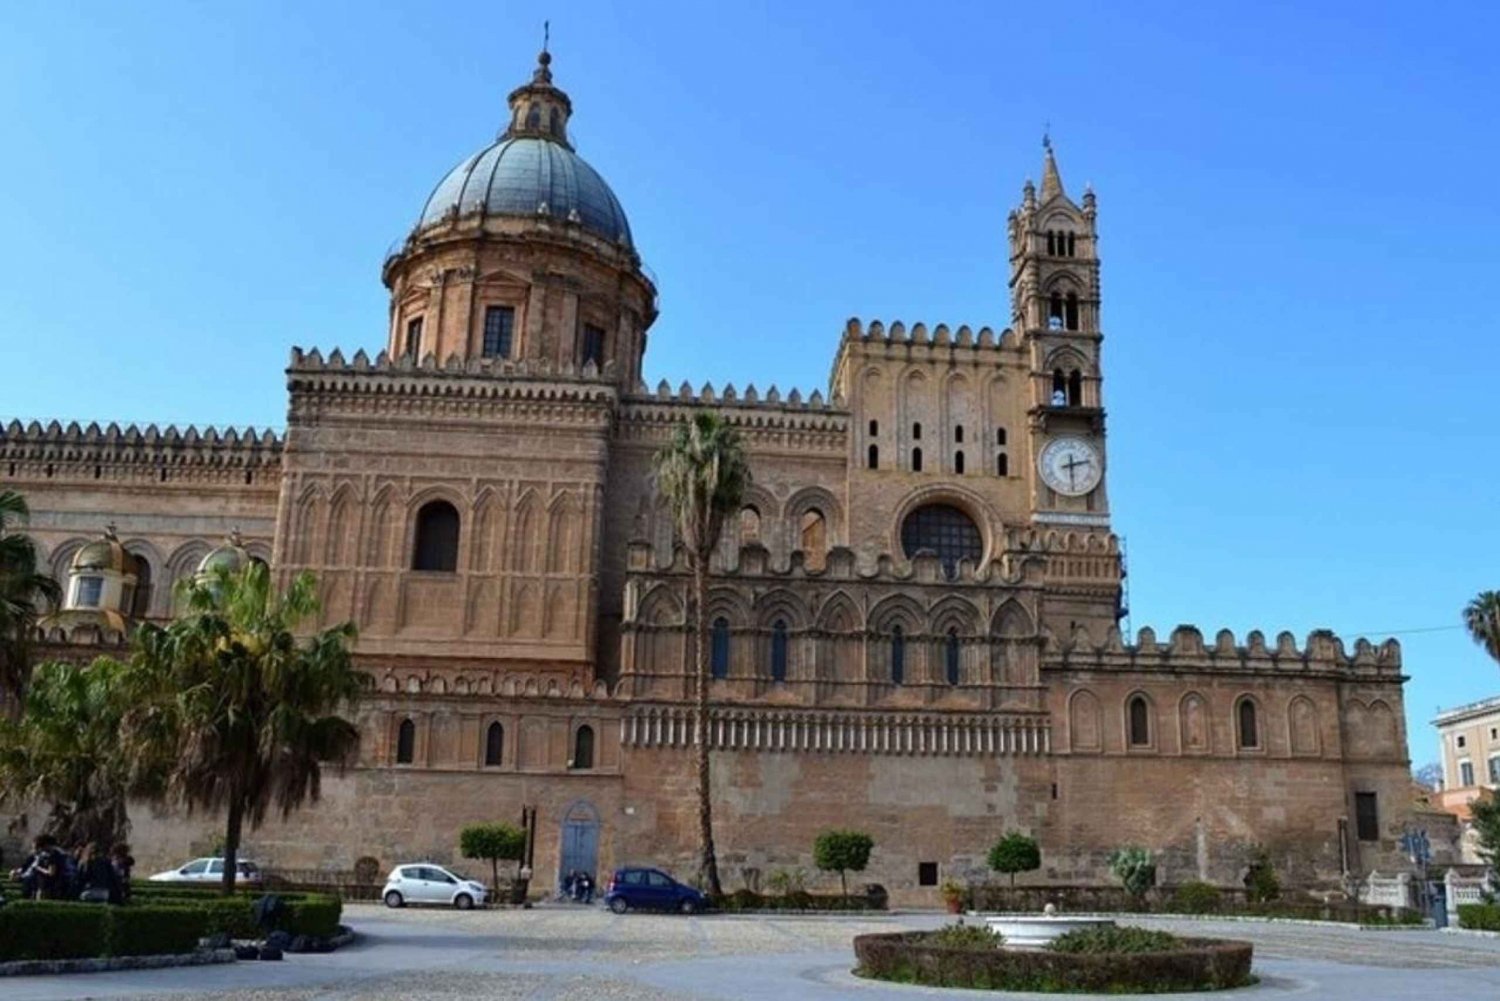 Palermo: obowiązkowe atrakcje - wycieczka piesza